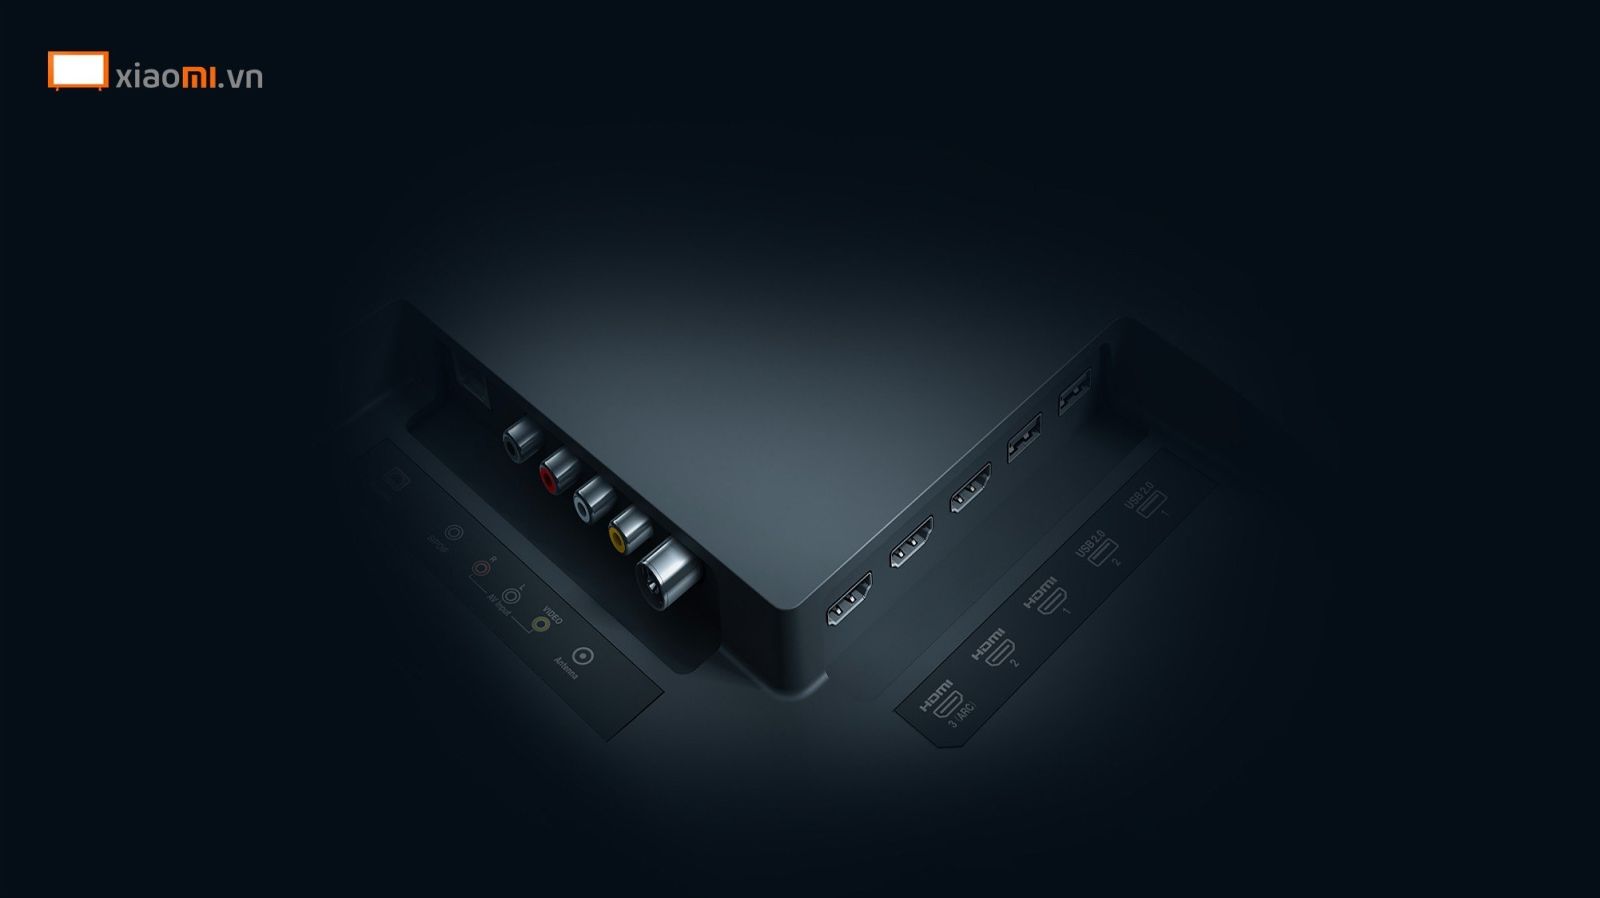 hệ thống cổng kết nối Tivi Xiaomi TV5 siêu mỏng